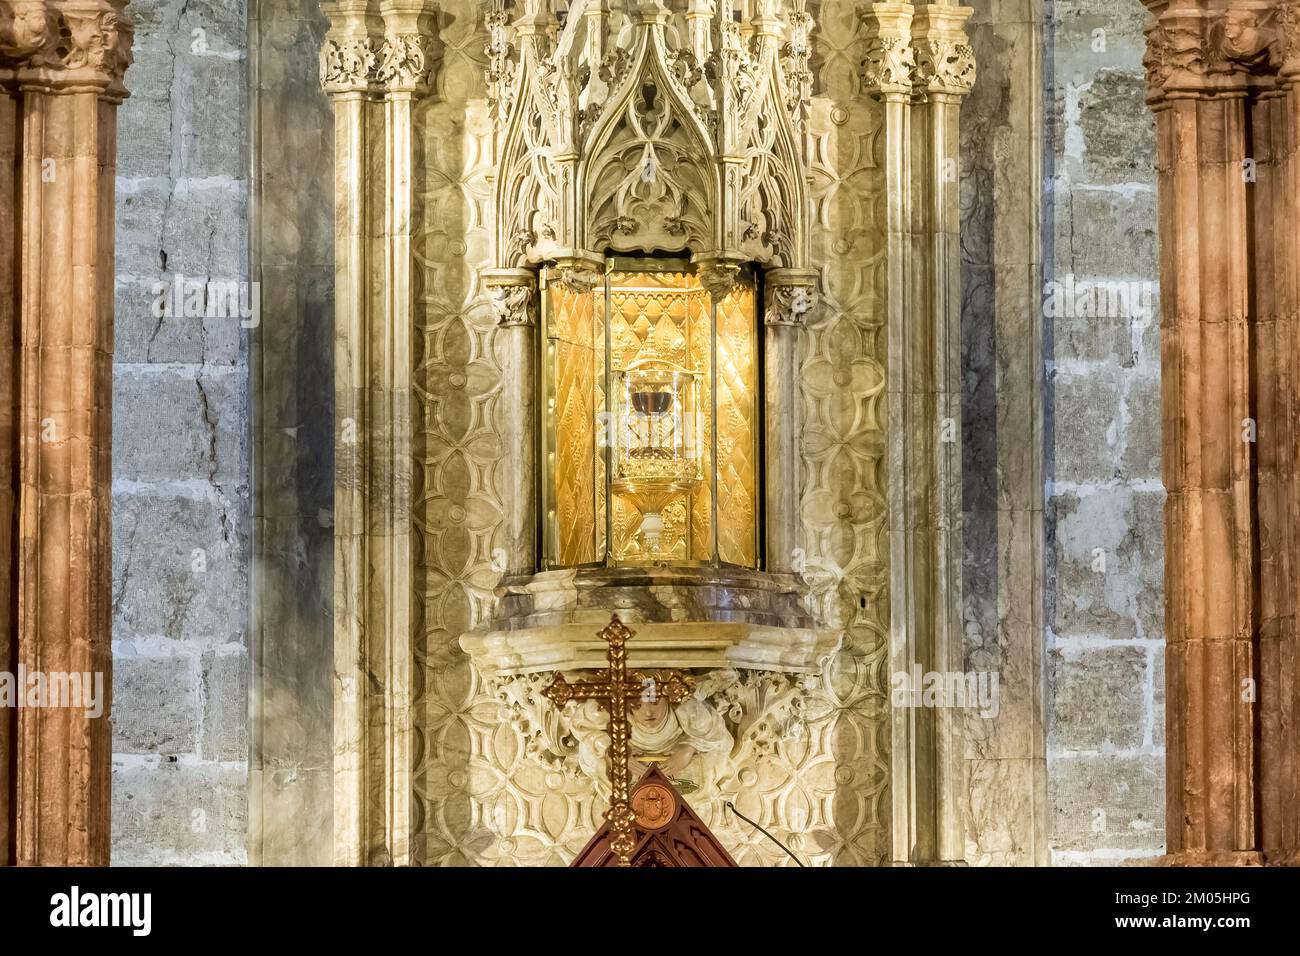 Détail architectural de la chapelle du Saint Chalice, située à l'intérieur de la cathédrale de Valence, dans le centre historique de la ville Banque D'Images